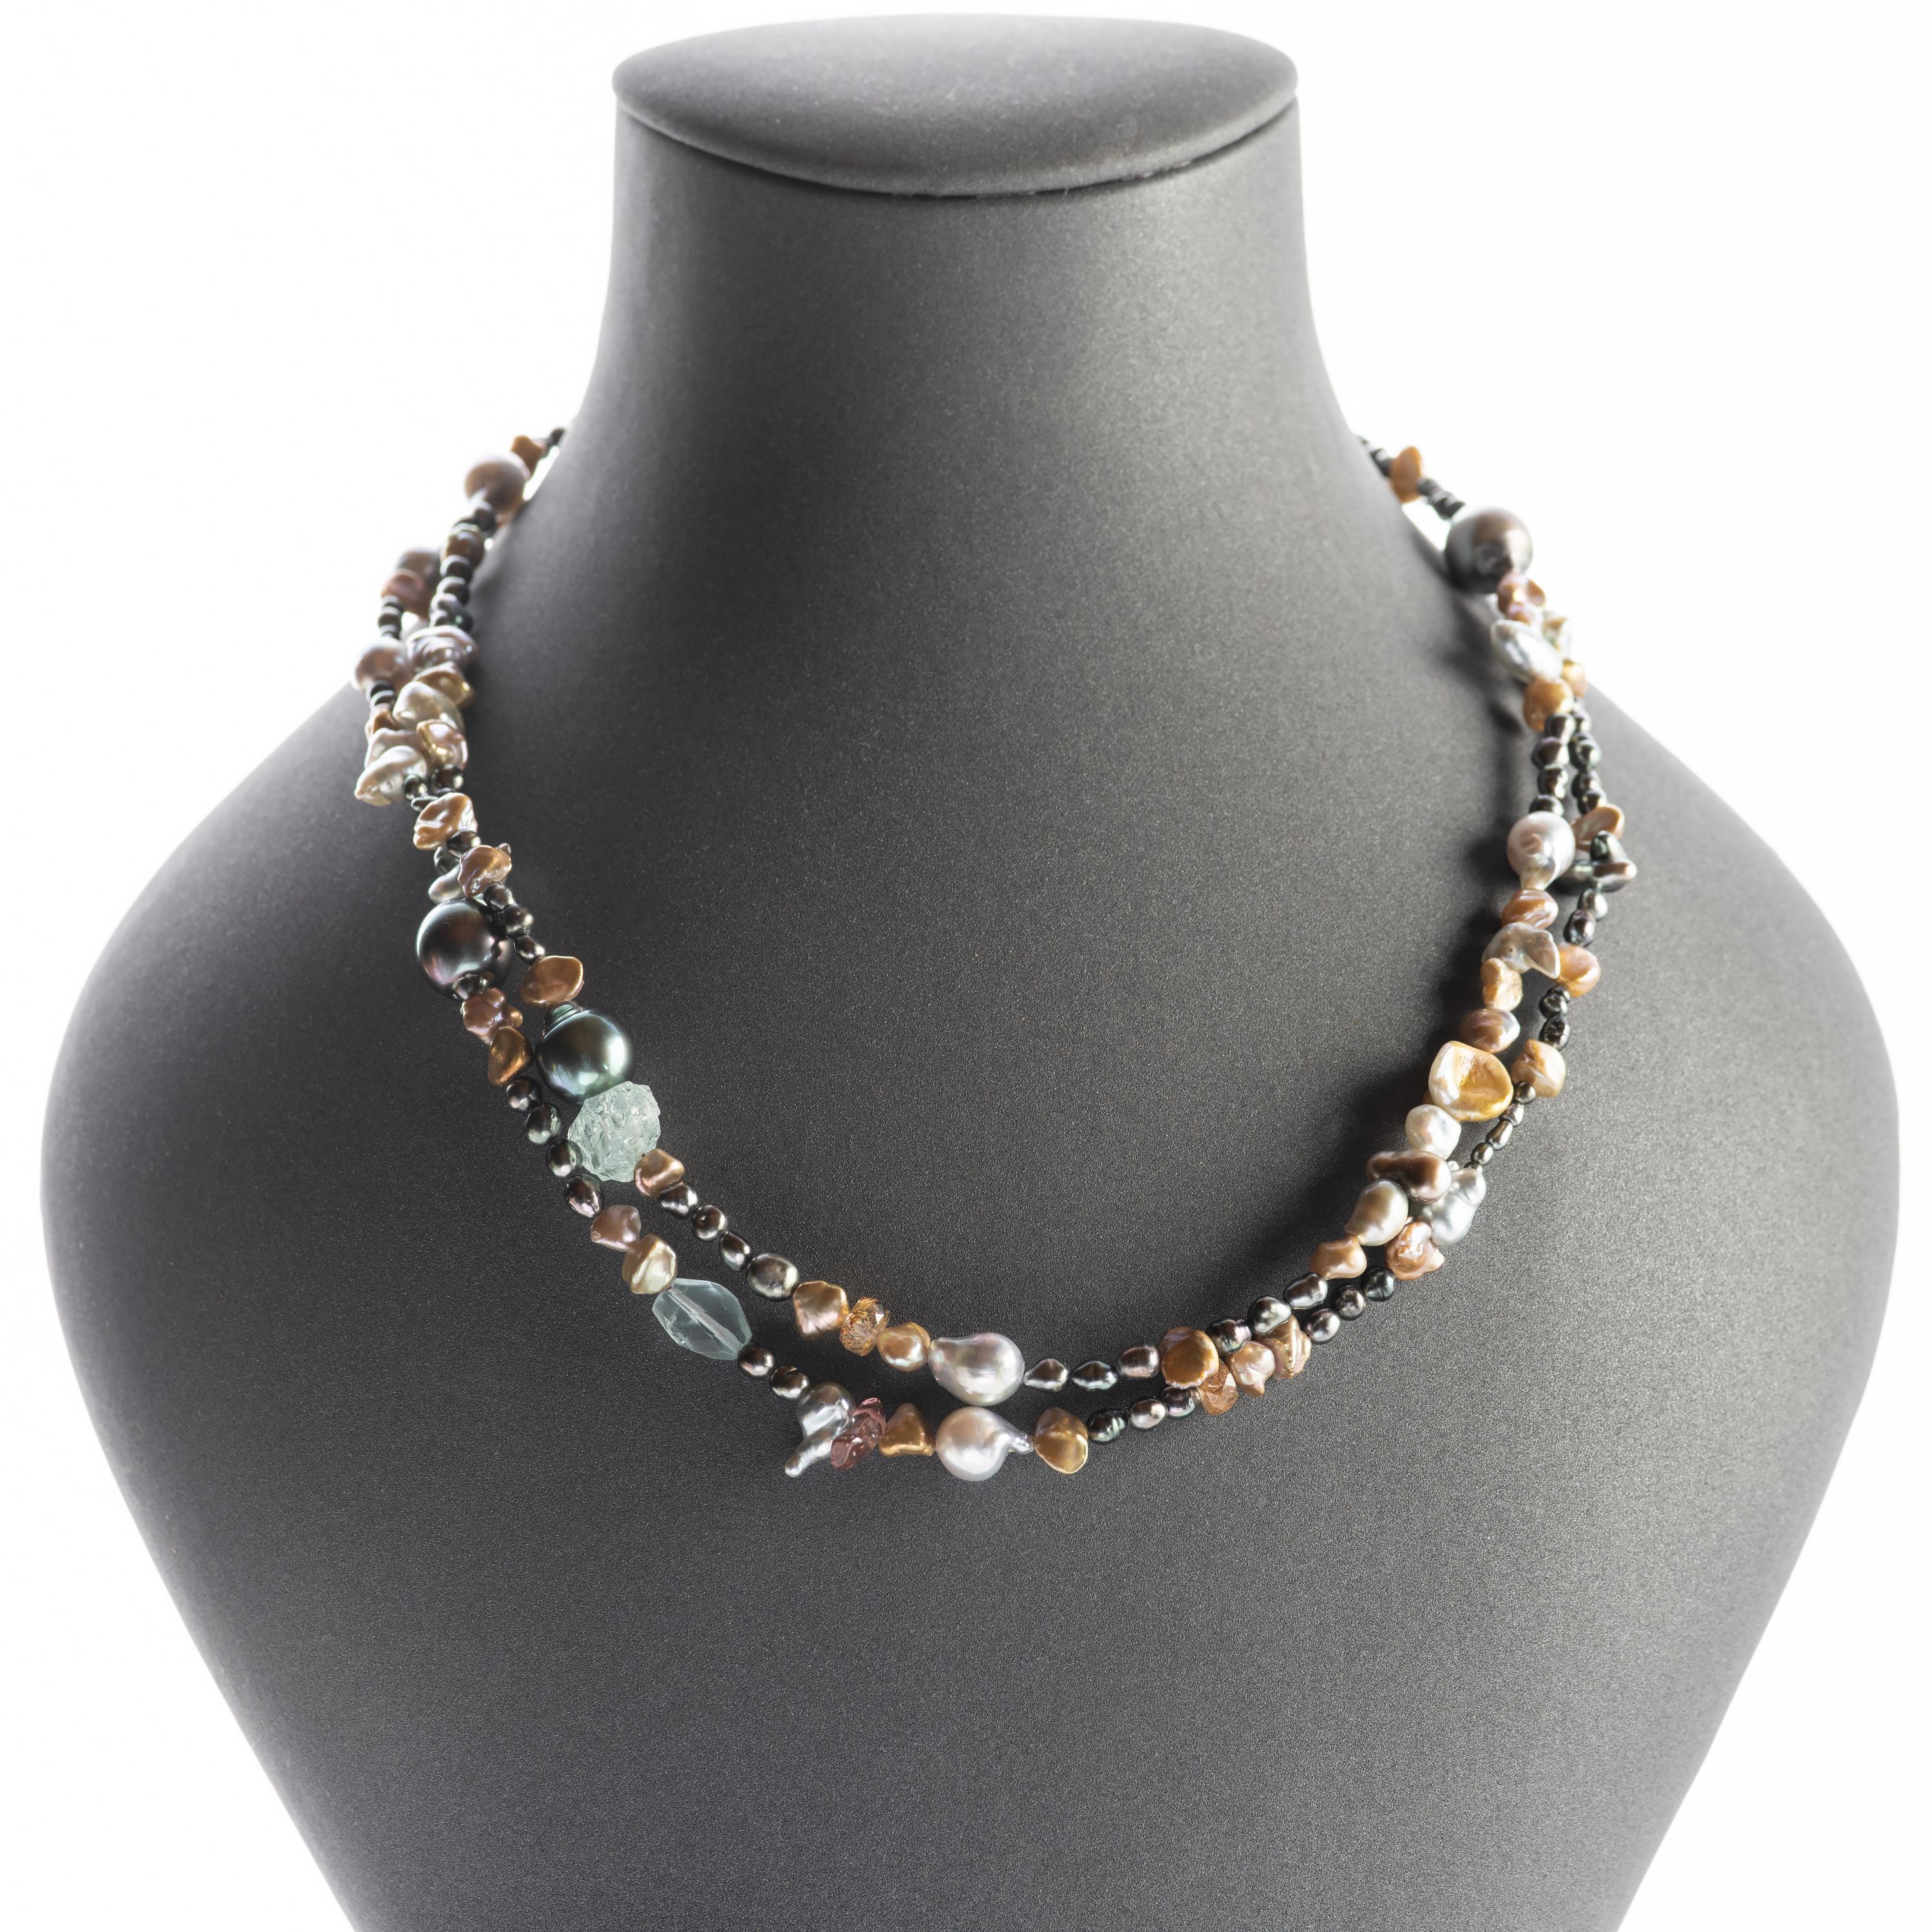 Natürlich gefärbte Südsee-Keshi-Perlen, barocke Tahiti-Perlen, leuchtende Akoya-Perlen und chinesische Süßwasserperlen sind mit glasklaren Aquamarin- und Turmalinkristallen zu einer luxuriösen, langen Halskette aufgereiht - 36 Zoll -, die Sie immer